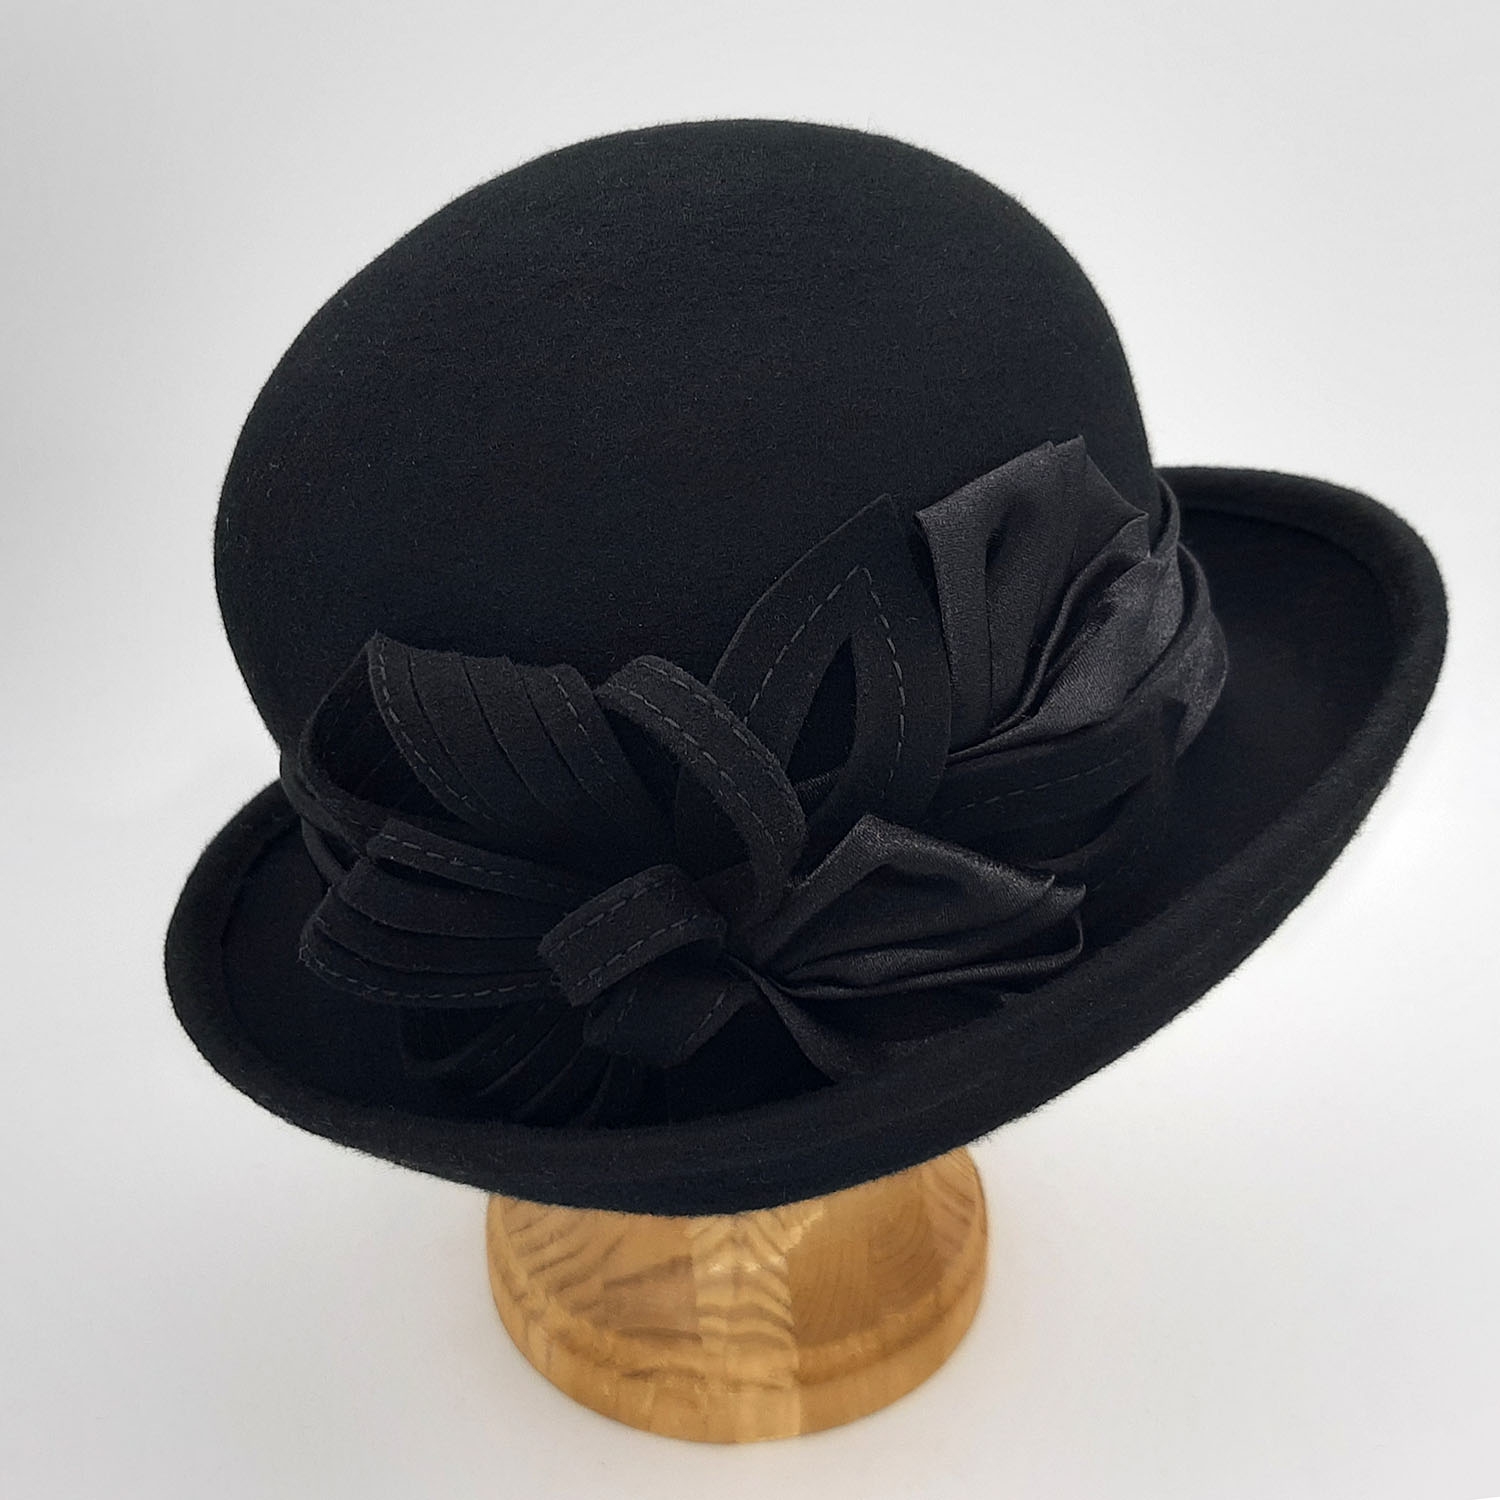 Шляпа из фетра черная. Черная фетровая шляпа женская. Шляпа из фетра черная женская. Оригинальная шляпа